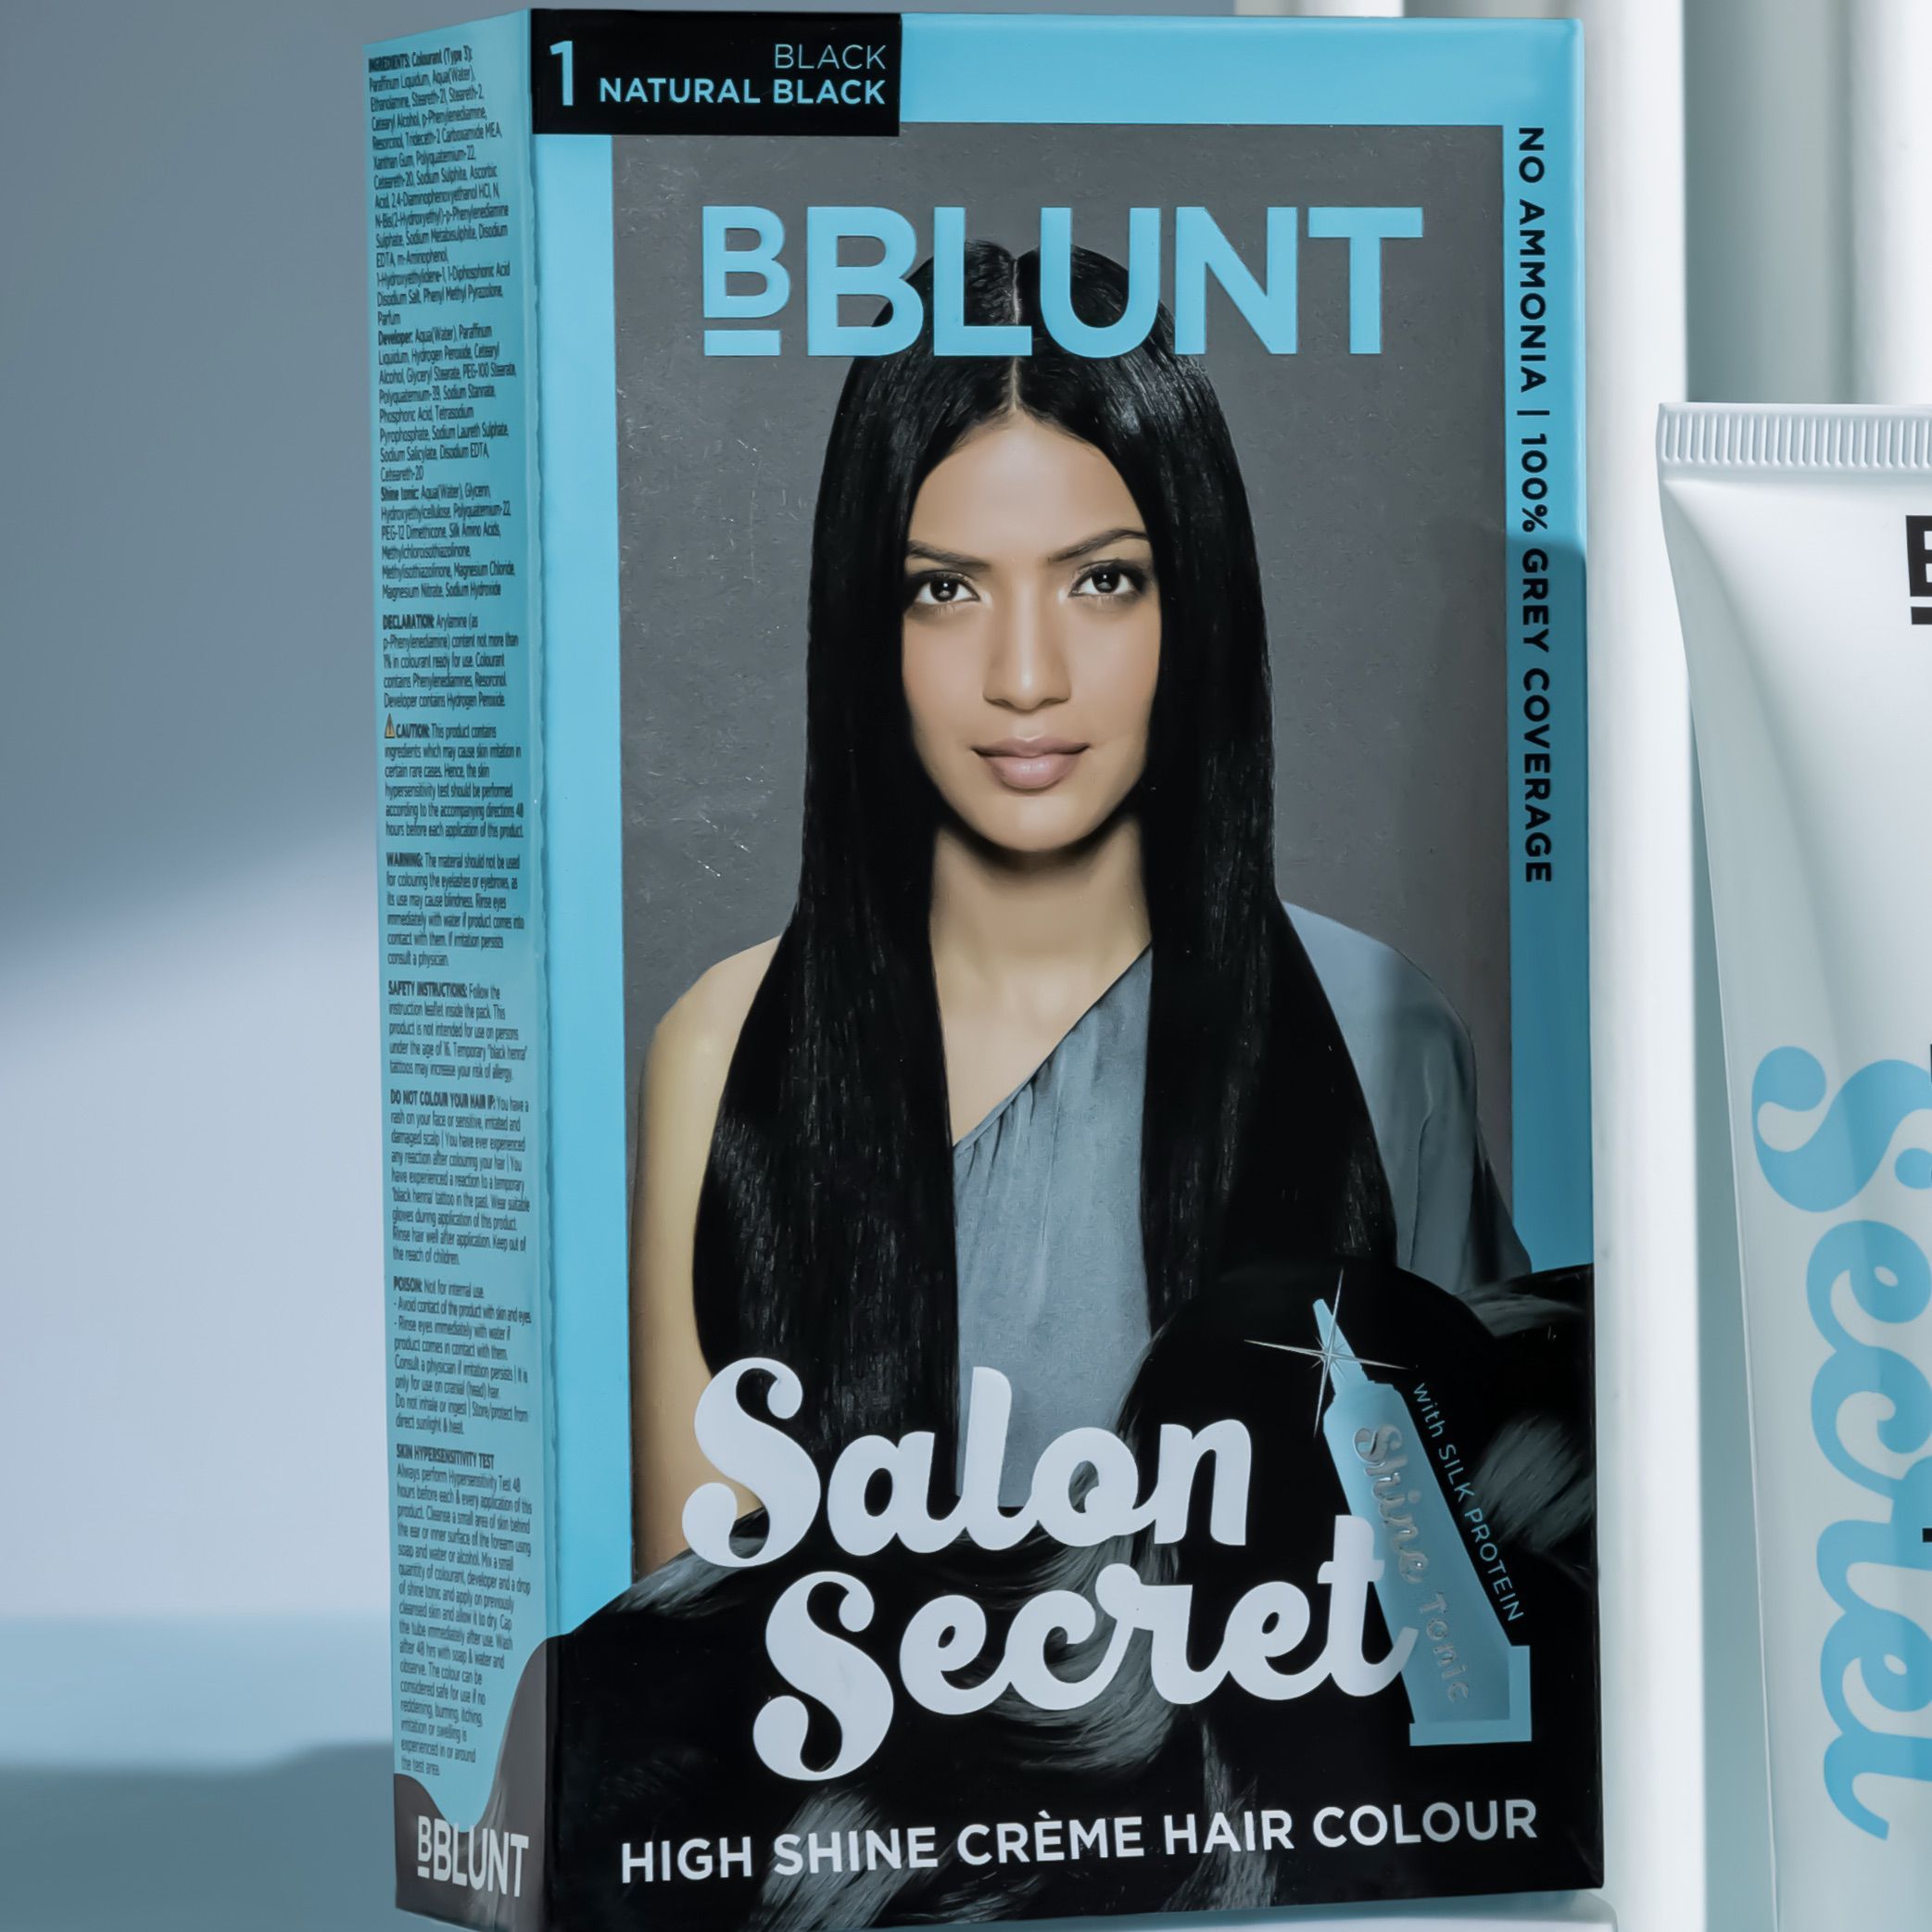 BBLUNT LAUNCHES ITS AT HOME HIGH SHINE CRÈME HAIR COLOUR  Atul Malikram  PR 247 Network Ltd